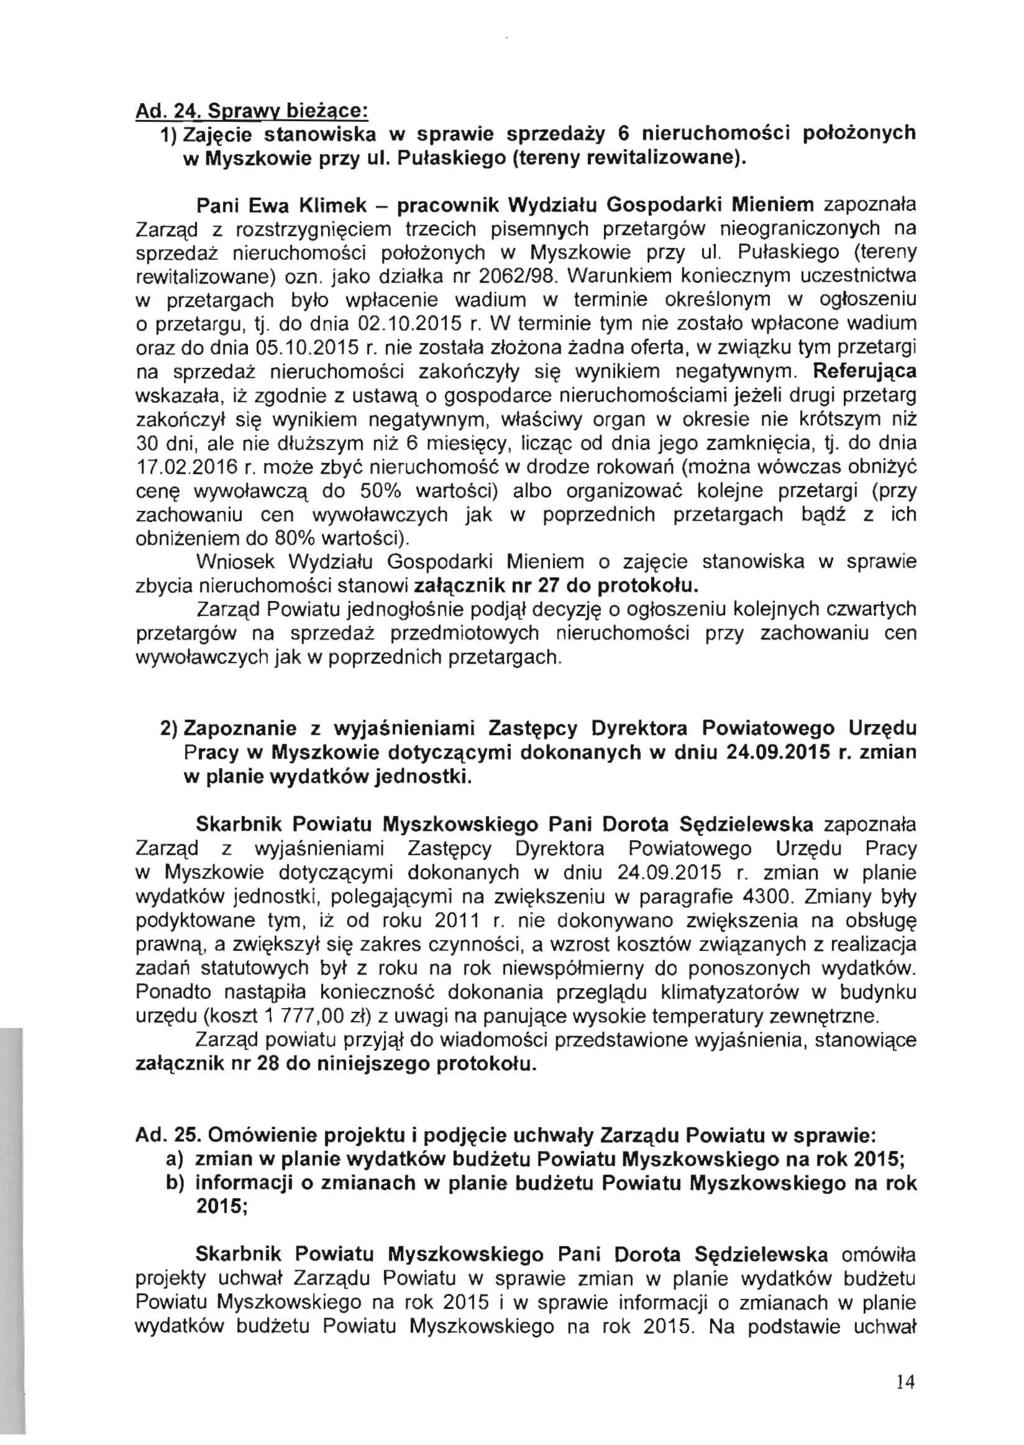 Ad. 24. Sprawy biezace: 1) Zaj~cie stanowiska w sprawie sprzedazy 6 nieruchomosci potozonych w Myszkowie przy ul. Putaskiego (tereny rewitalizowane).